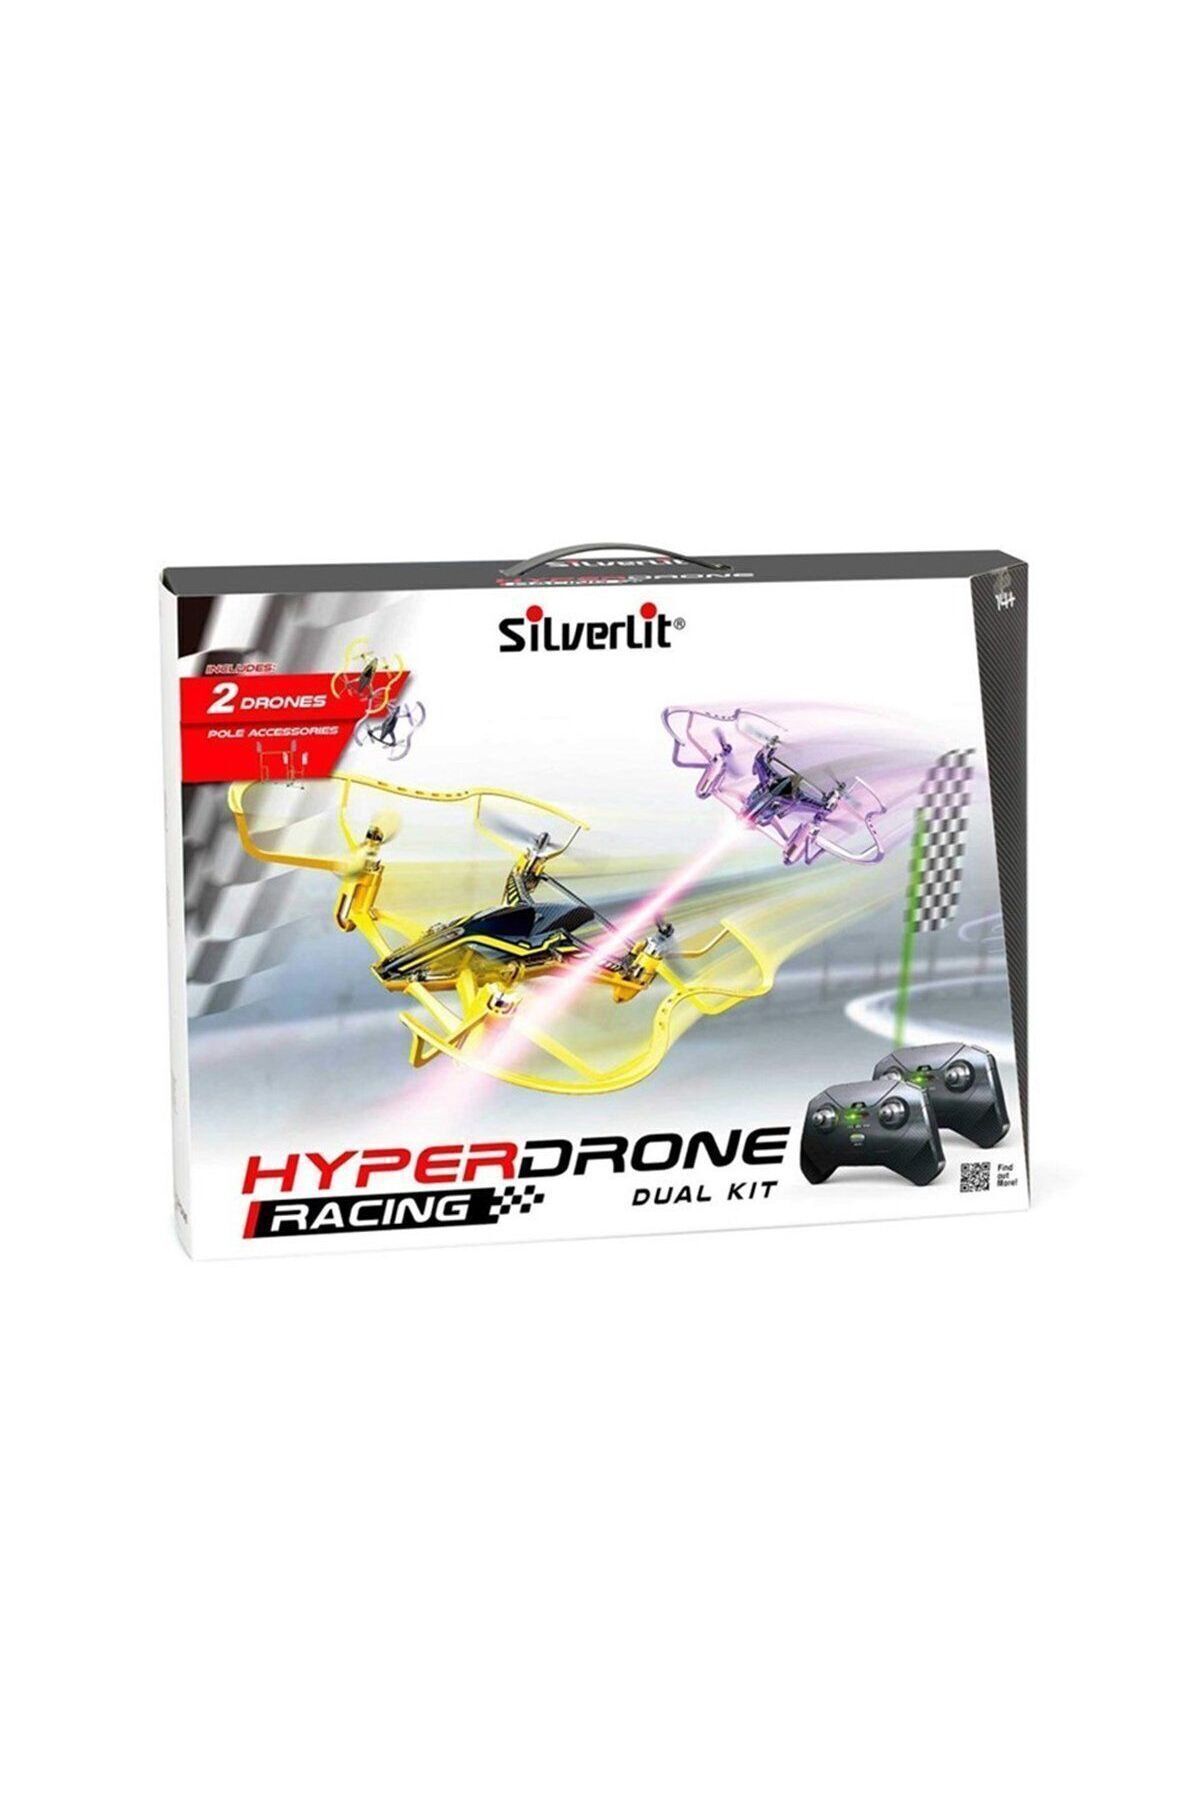 Limon Oyuncak Sıl/84789 Silverlit Hyperdrone Yarış Büyük Kit 2.4g 4ch Gyro-çift Drone